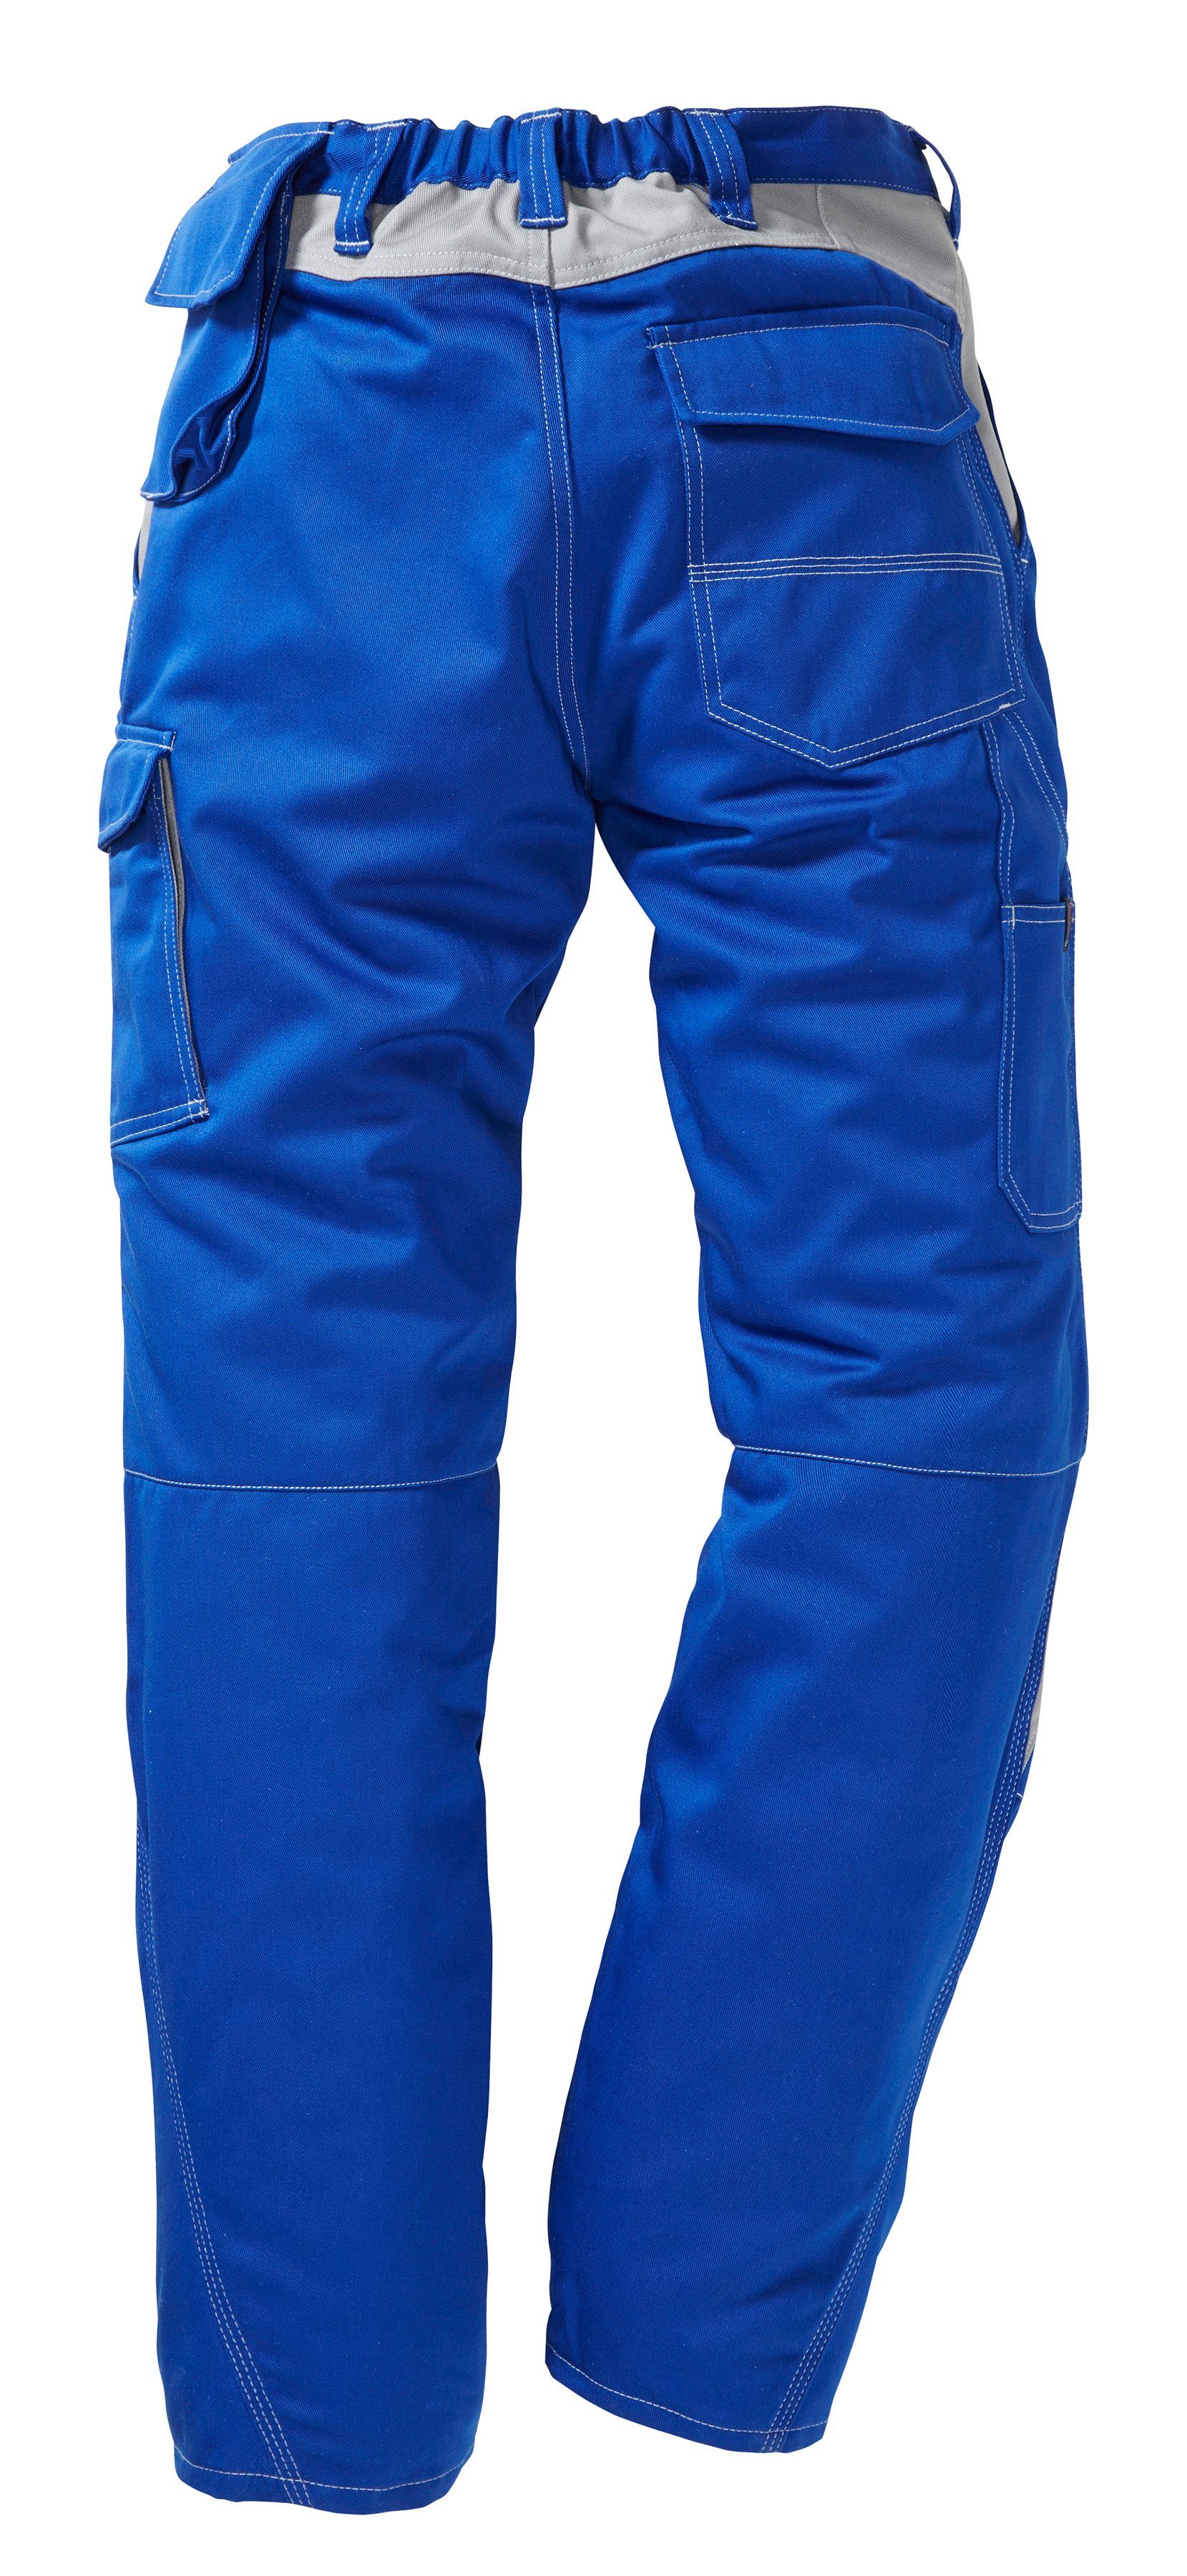 Arbeitshose Kübler mit blau-grau Kniepolstertaschen